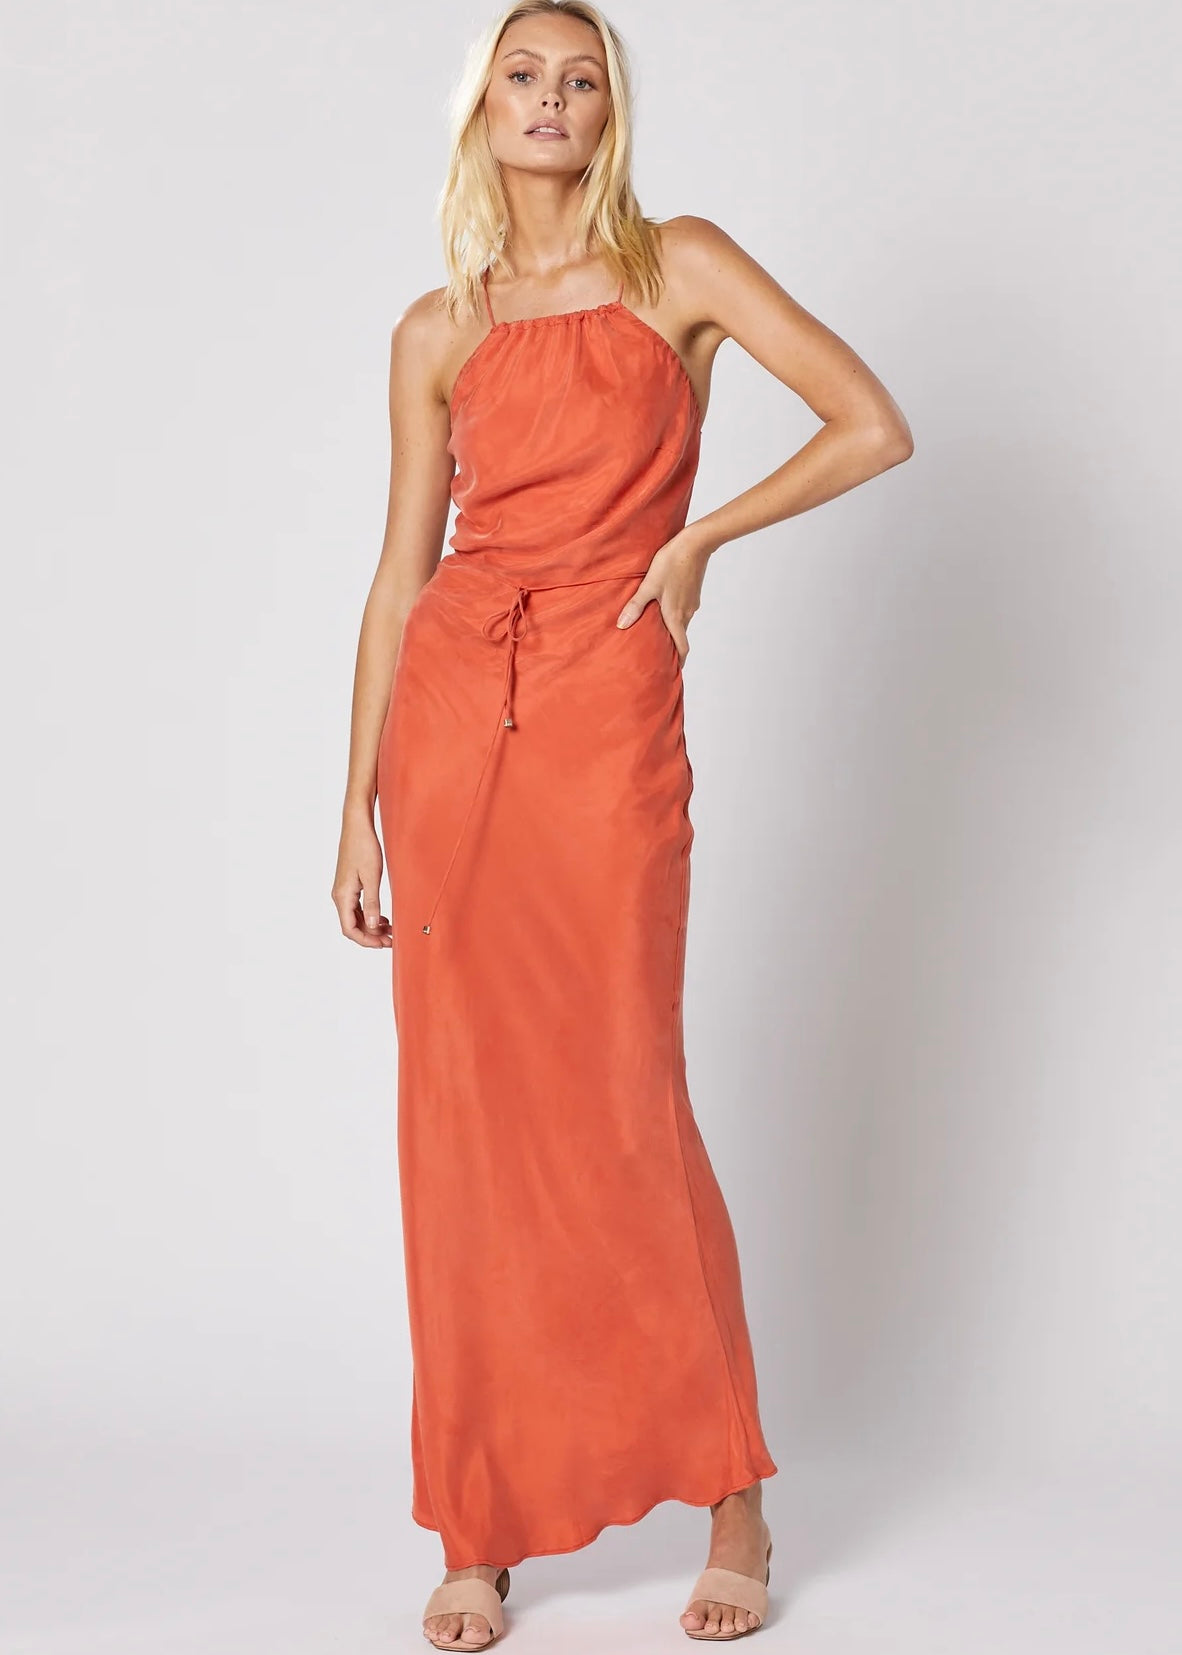 Seraphina Maxi Dress Size 8-10